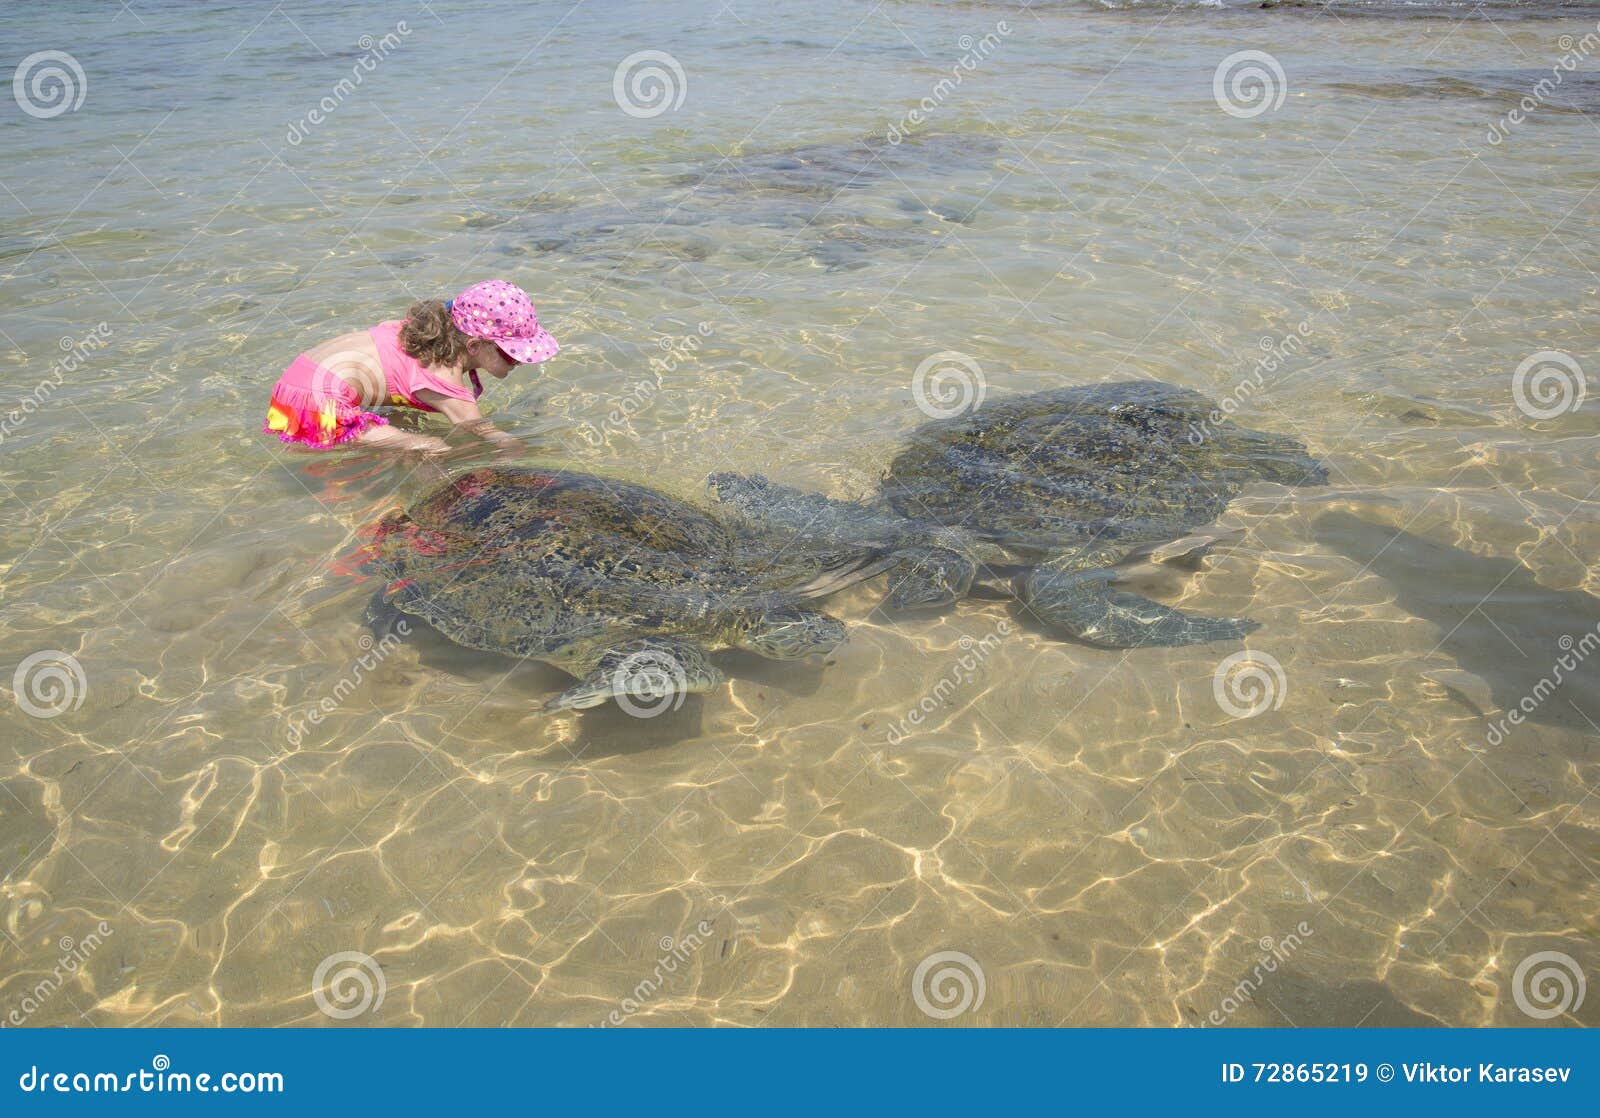 Черепаший пляж шри. Пляж Хиккадува Шри Ланка черепахи. Хиккадува Черепаший пляж. Хиккадува Шри Ланка Черепаший пляж. Хиккадува пляж с черепахами.